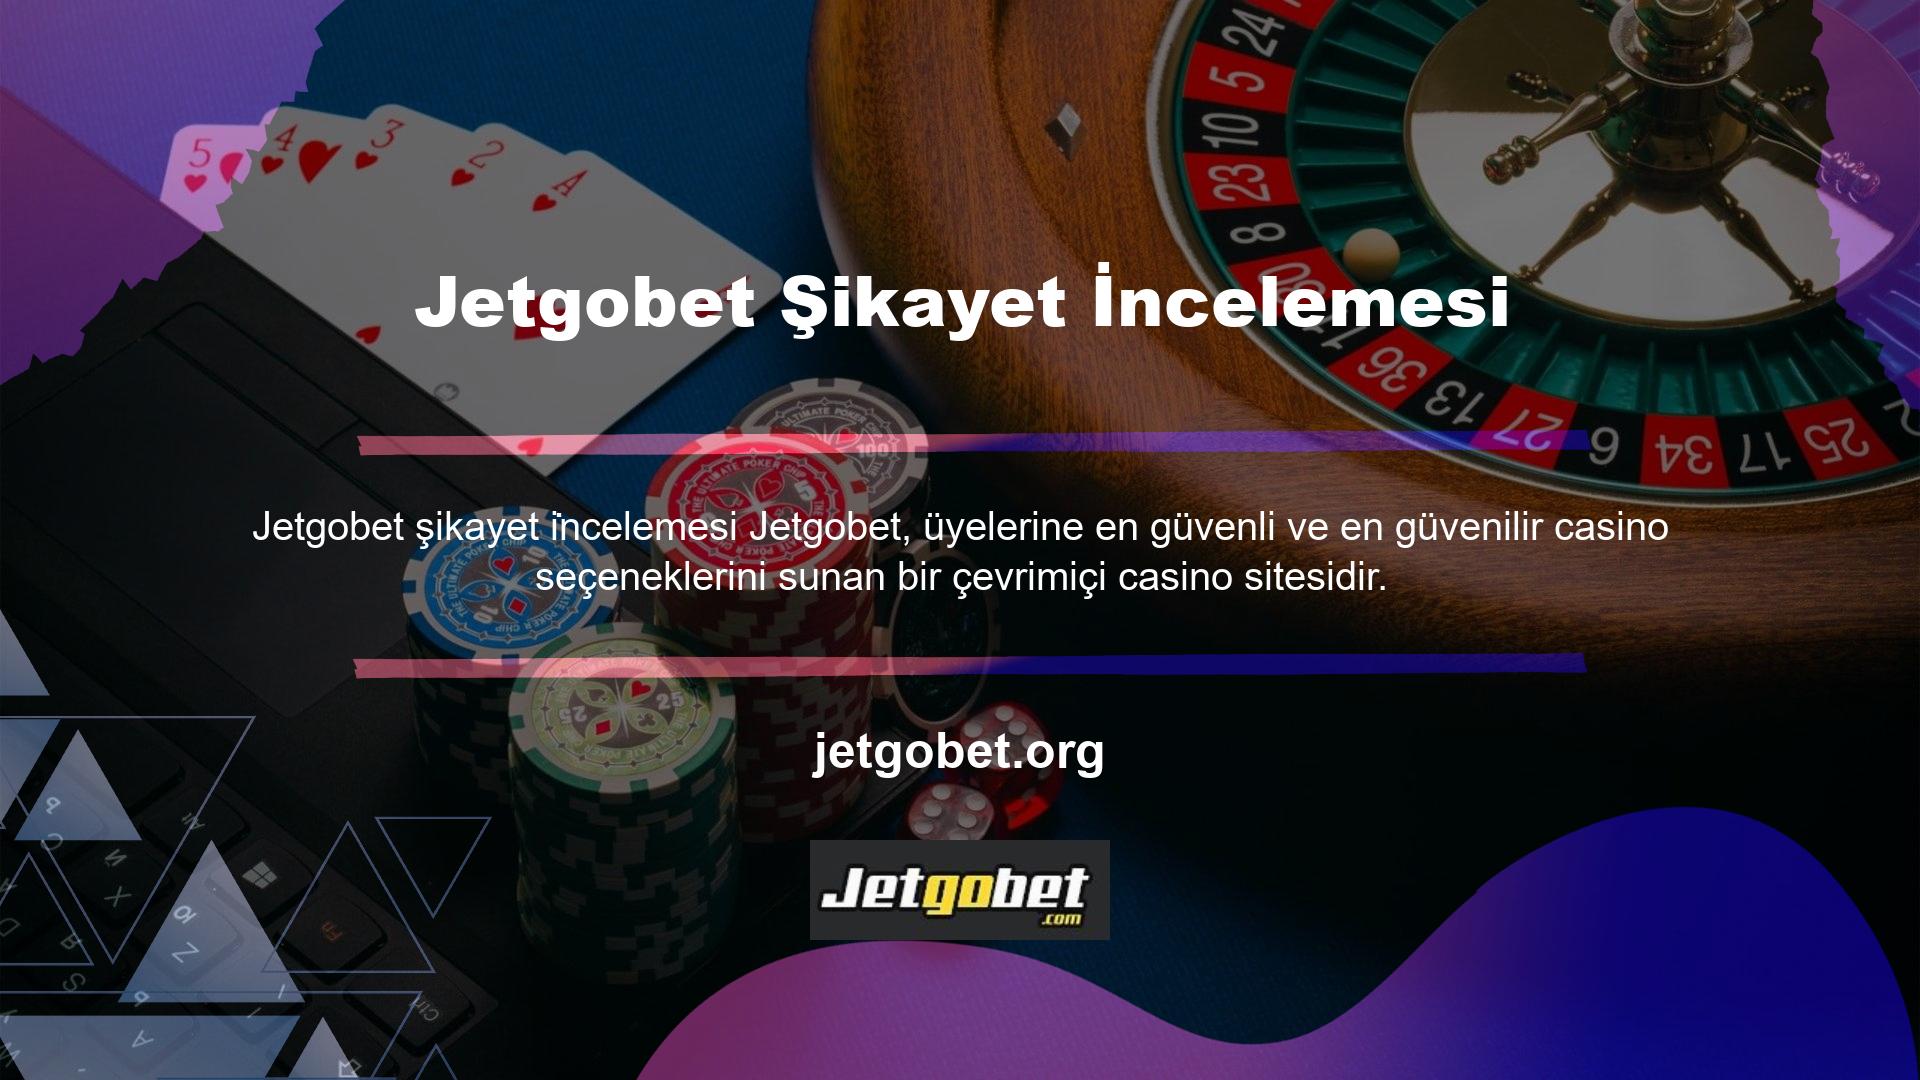 Jetgobet üyeleri, şikayetleri incelemek ve hızlı ve verimli çözümler sunmak için 7/24 canlı destek hizmetimize kolayca erişebilir